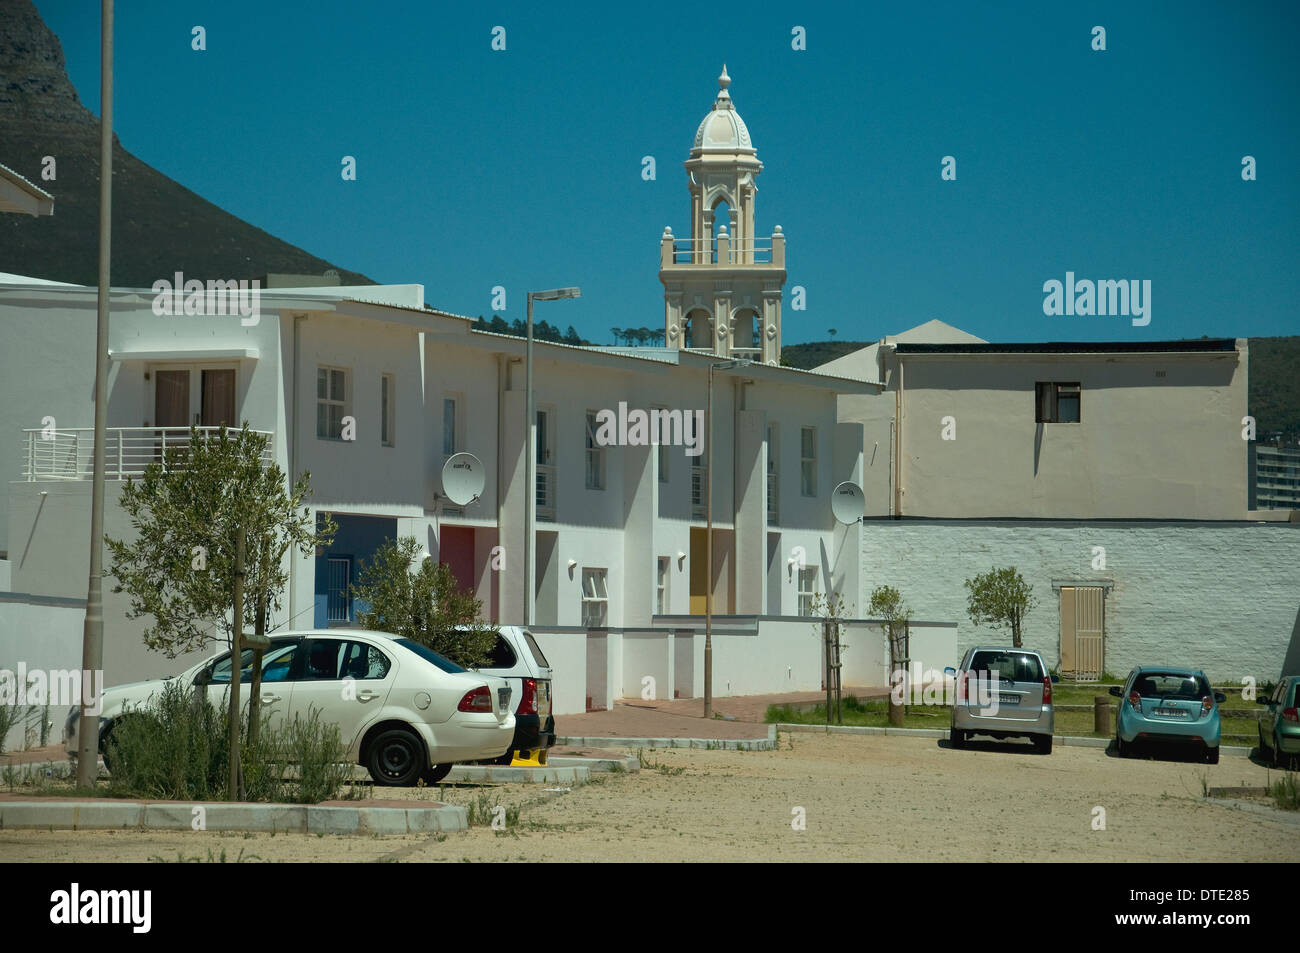 Cape Town il famoso distretto sei, abbattuto nell'apartheid, solo la moschea a sinistra in piedi, ora mostra una faccia la Duller Foto Stock